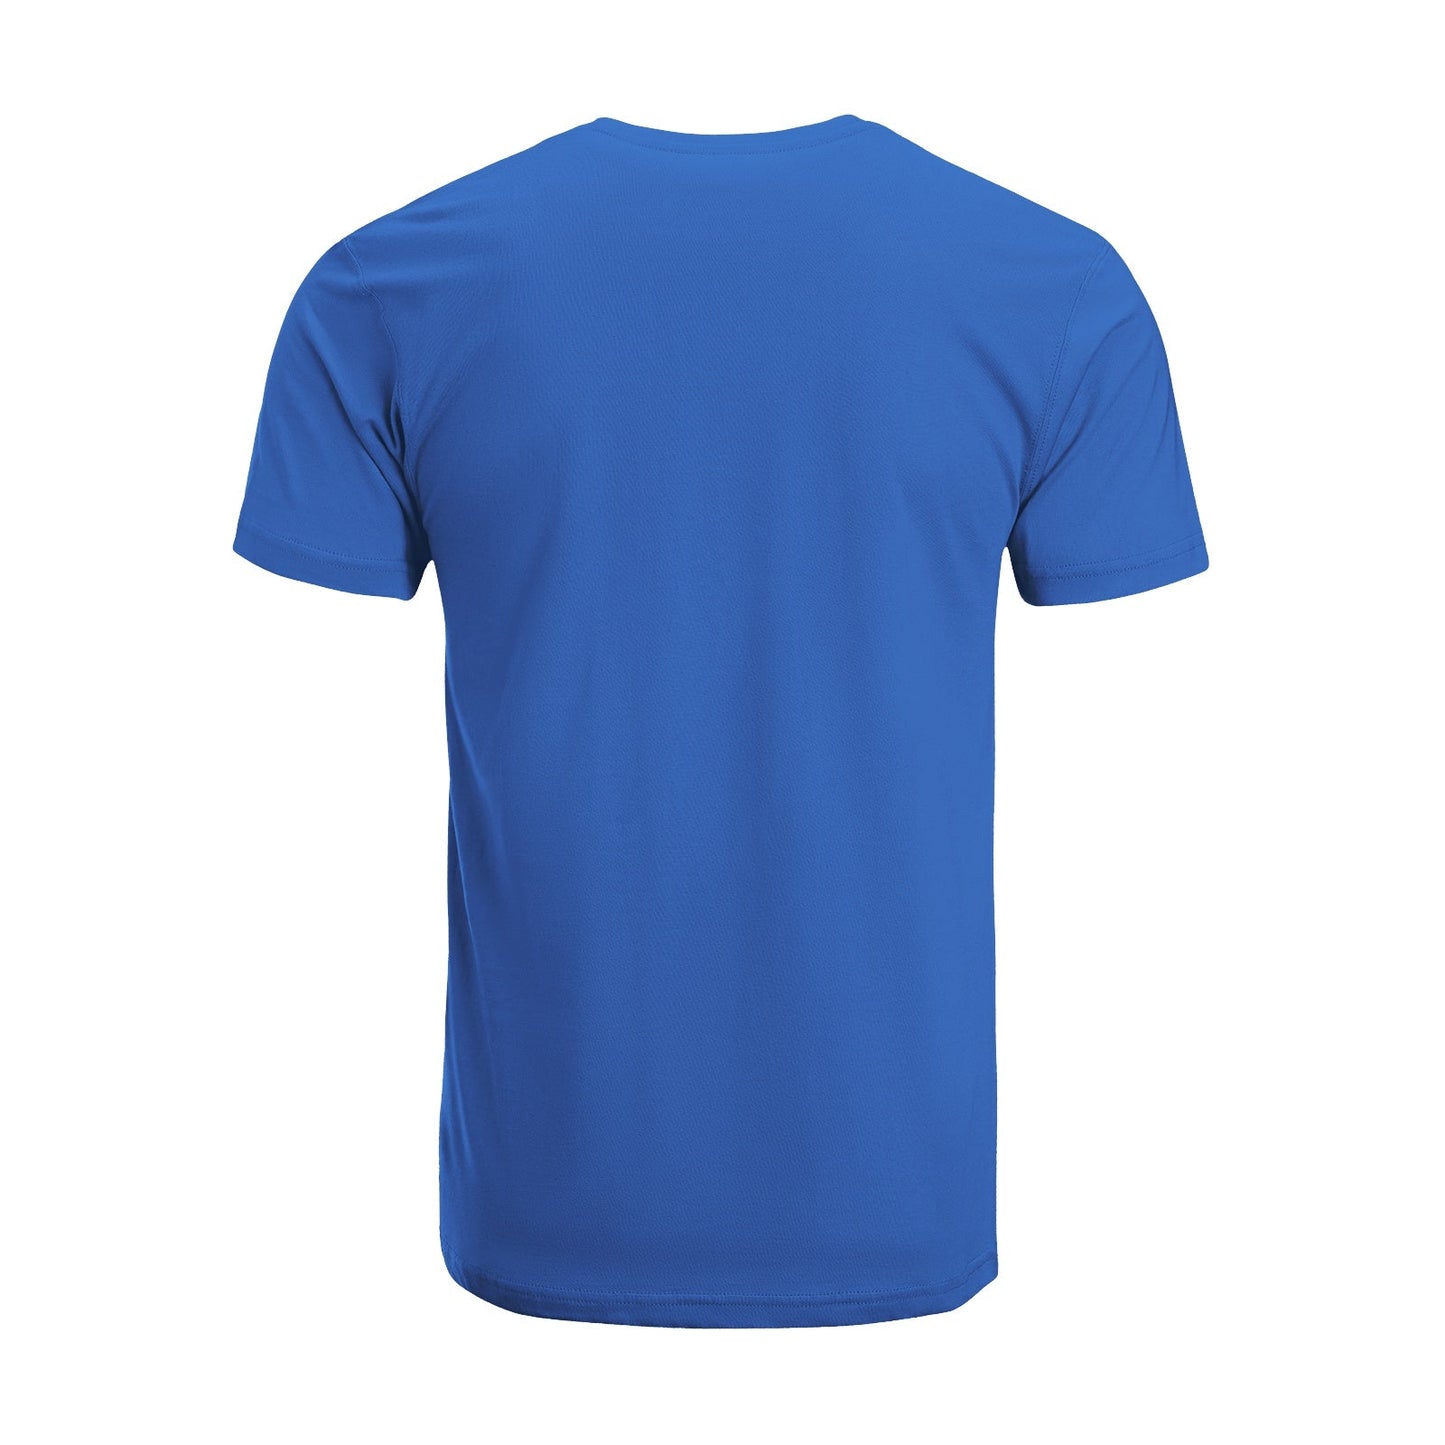 Unisex Short Sleeve Crew Neck Cotton Jersey T-Shirt TRUCK 31